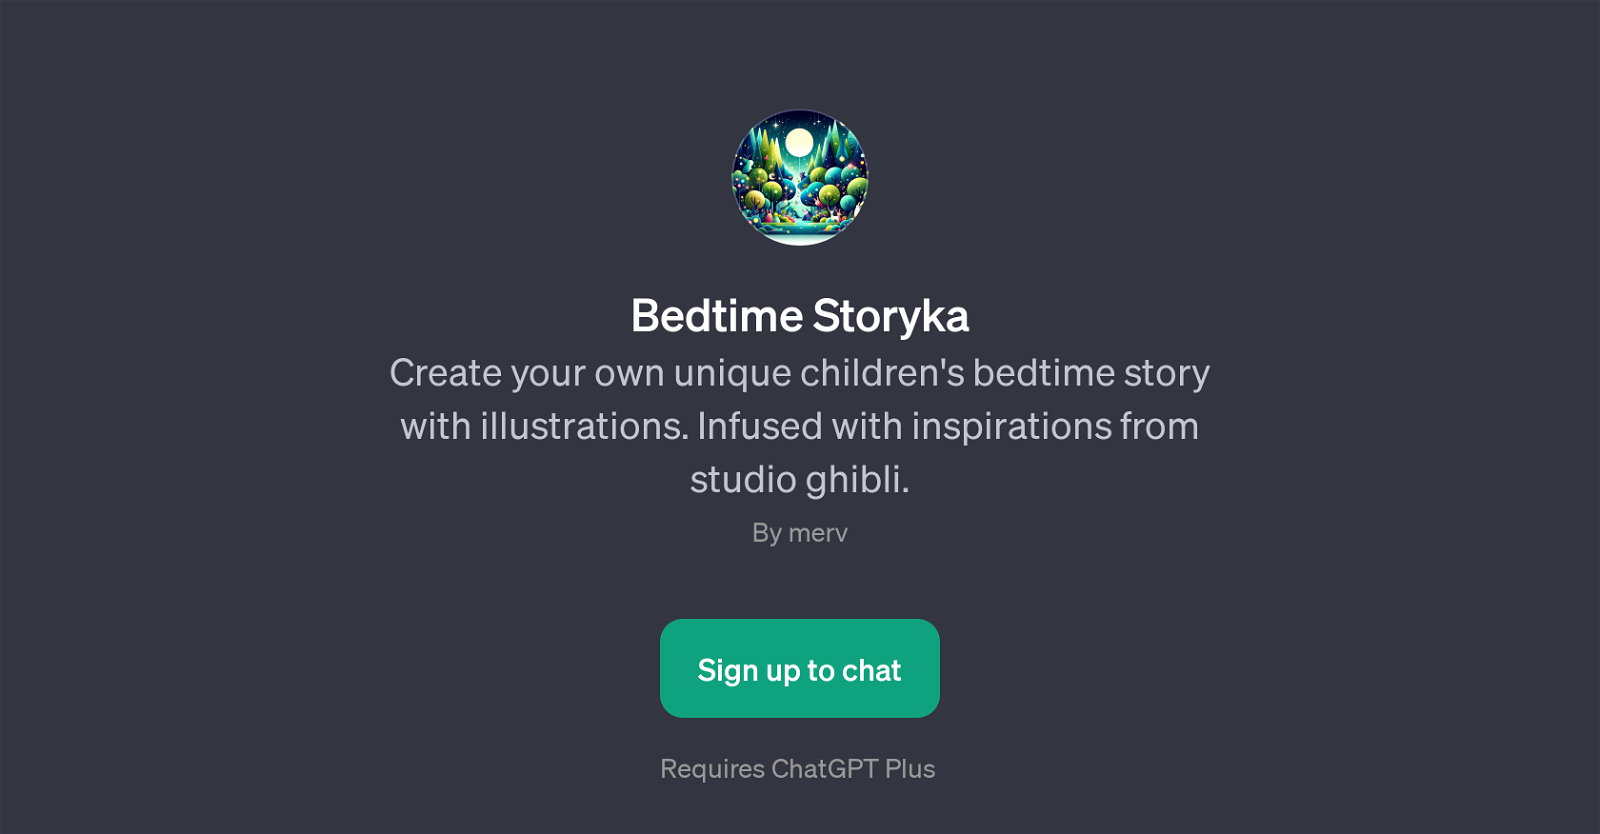 Bedtime Storyka website